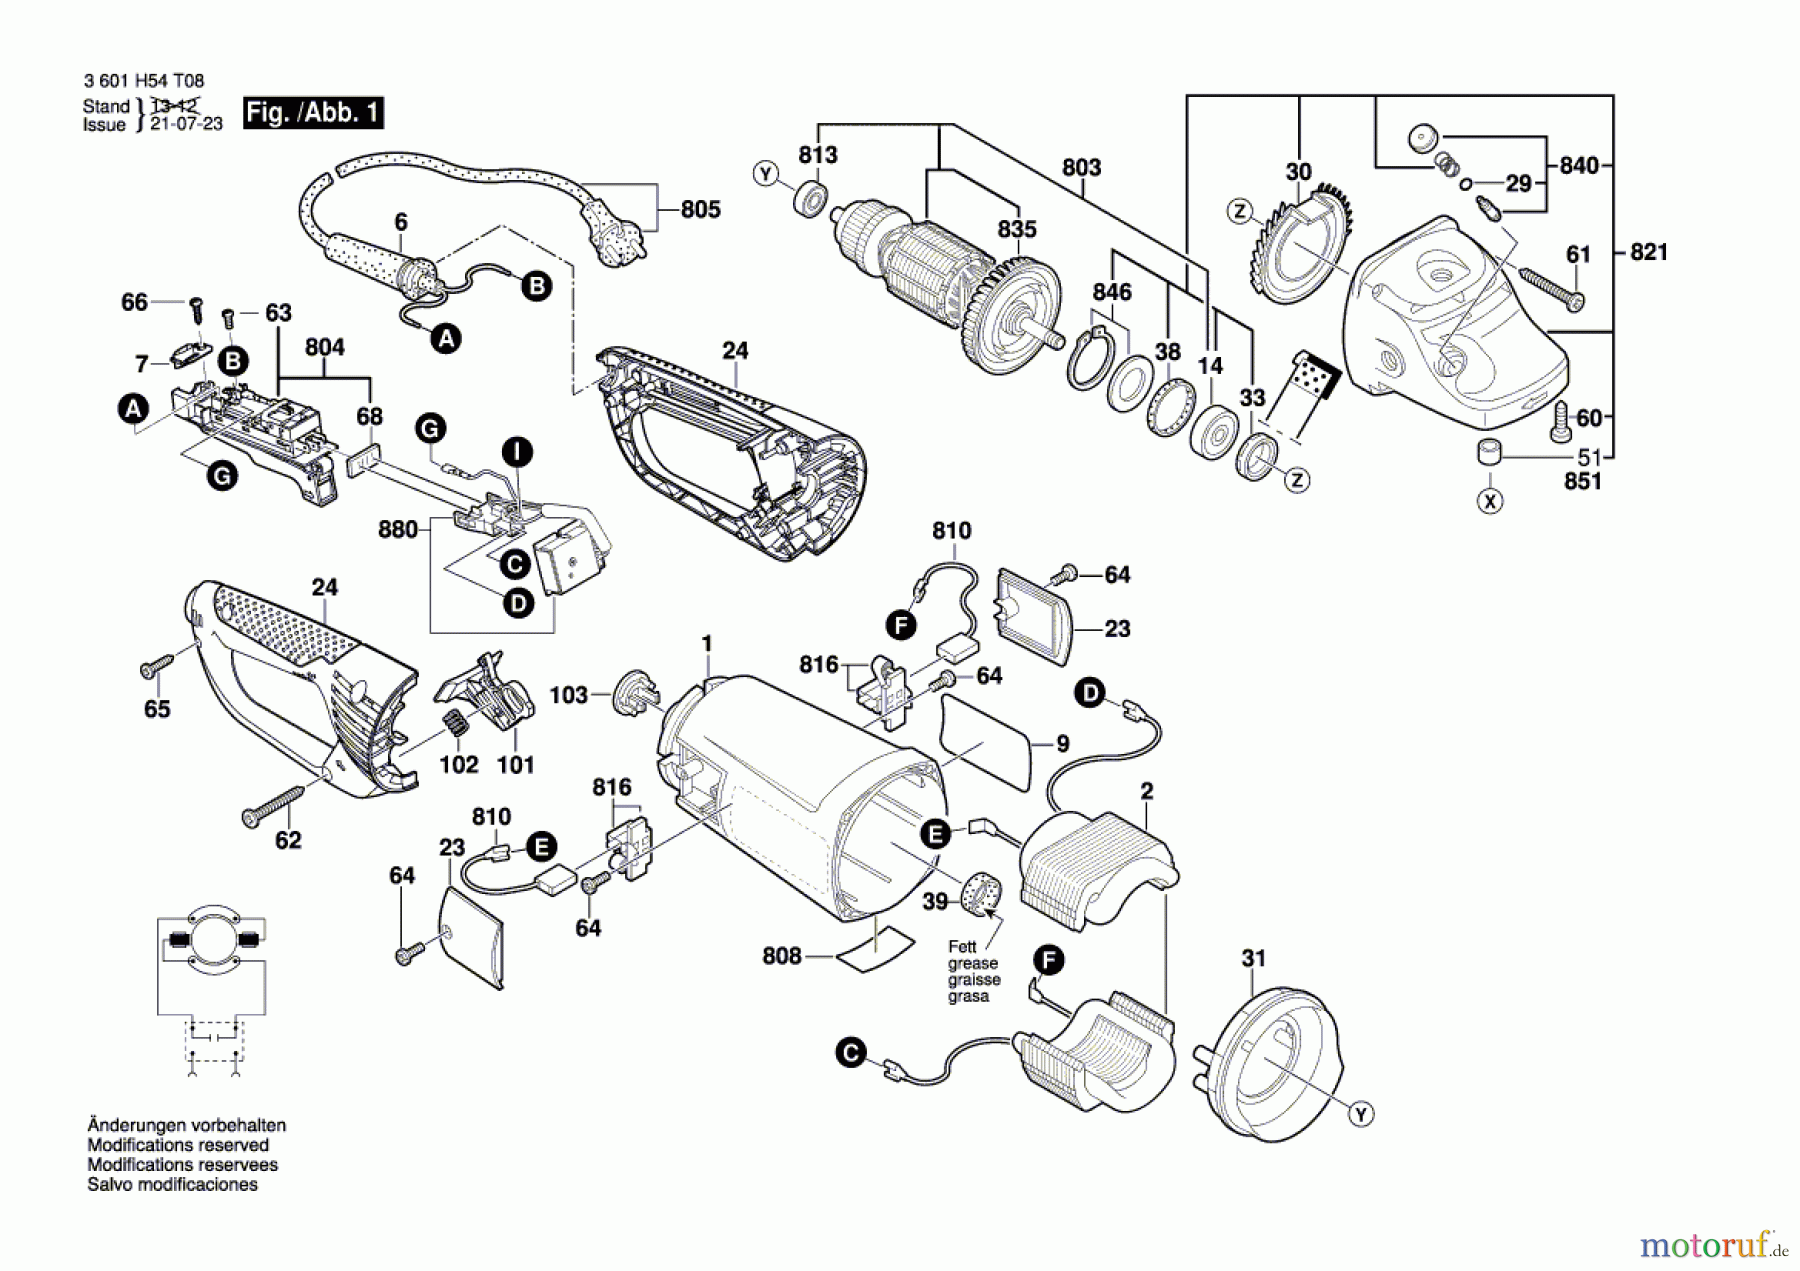  Bosch Werkzeug Winkelschleifer BAG 230-1 CLB Seite 1